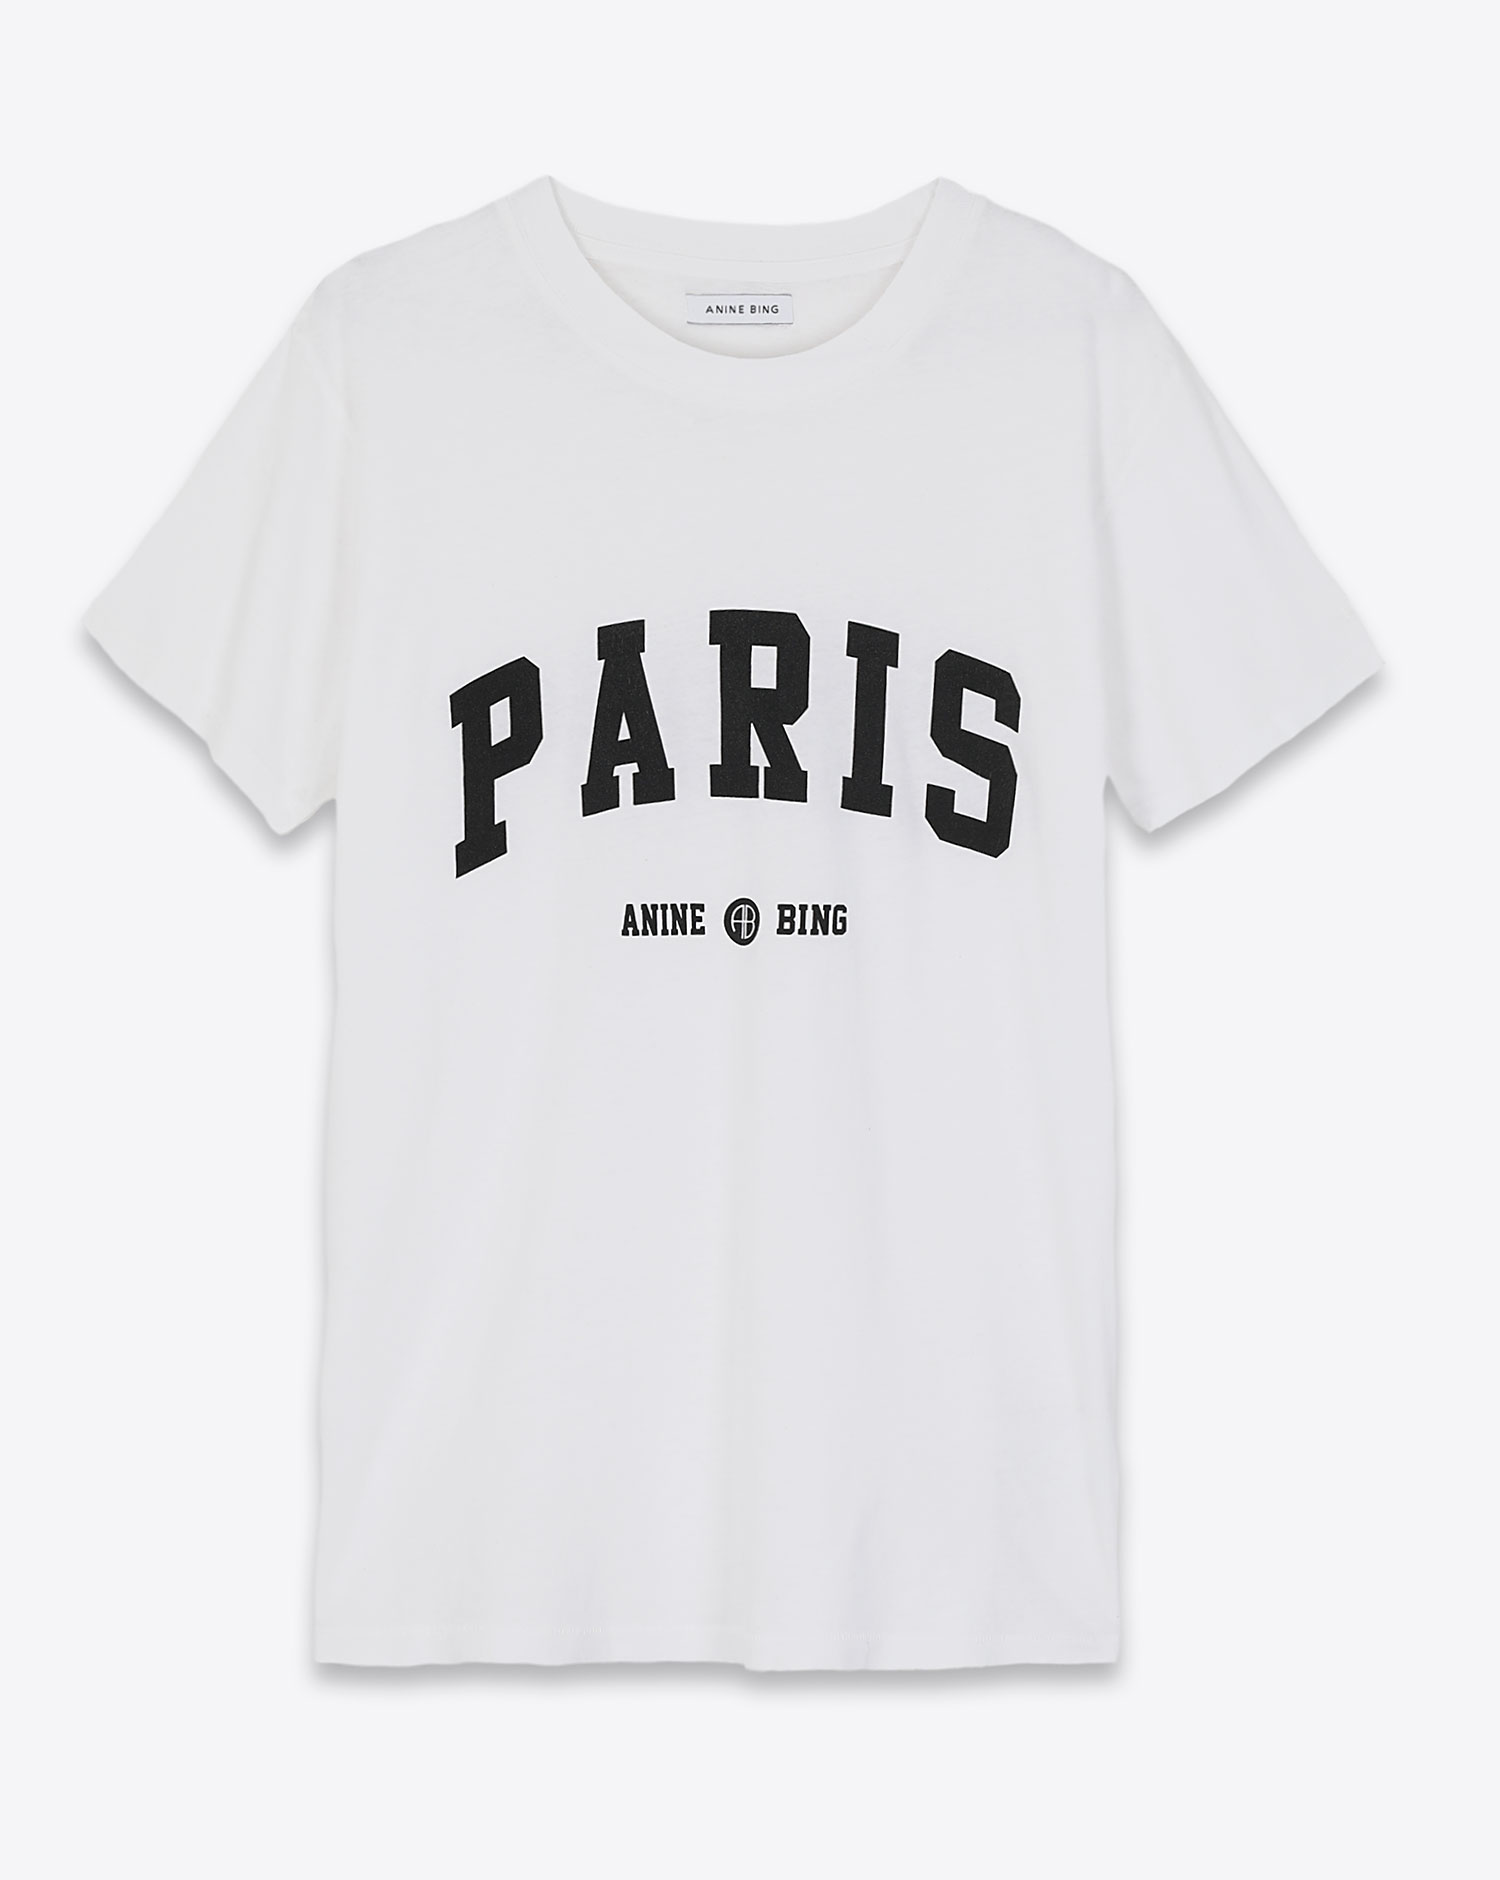 Tee-shirt Lili tee University Paris white Anine Bing